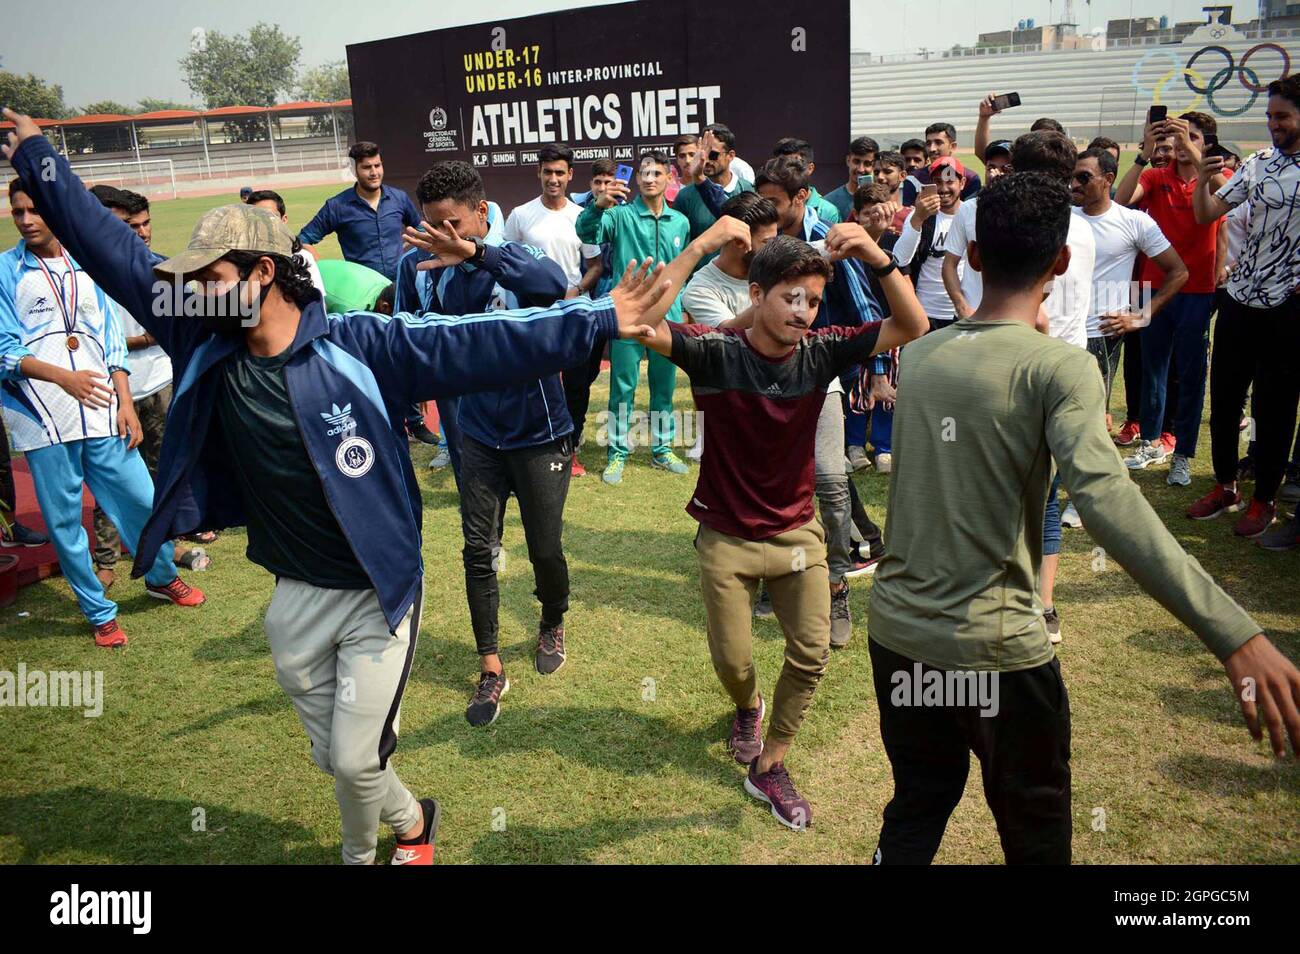 Les joueurs font de la danse lors de la cérémonie de clôture de la rencontre sportive interprovinciale de moins de 16 et 17 qui s'est tenue au complexe sportif de Qayyum à Peshawar le mercredi 29 septembre 2021. Banque D'Images